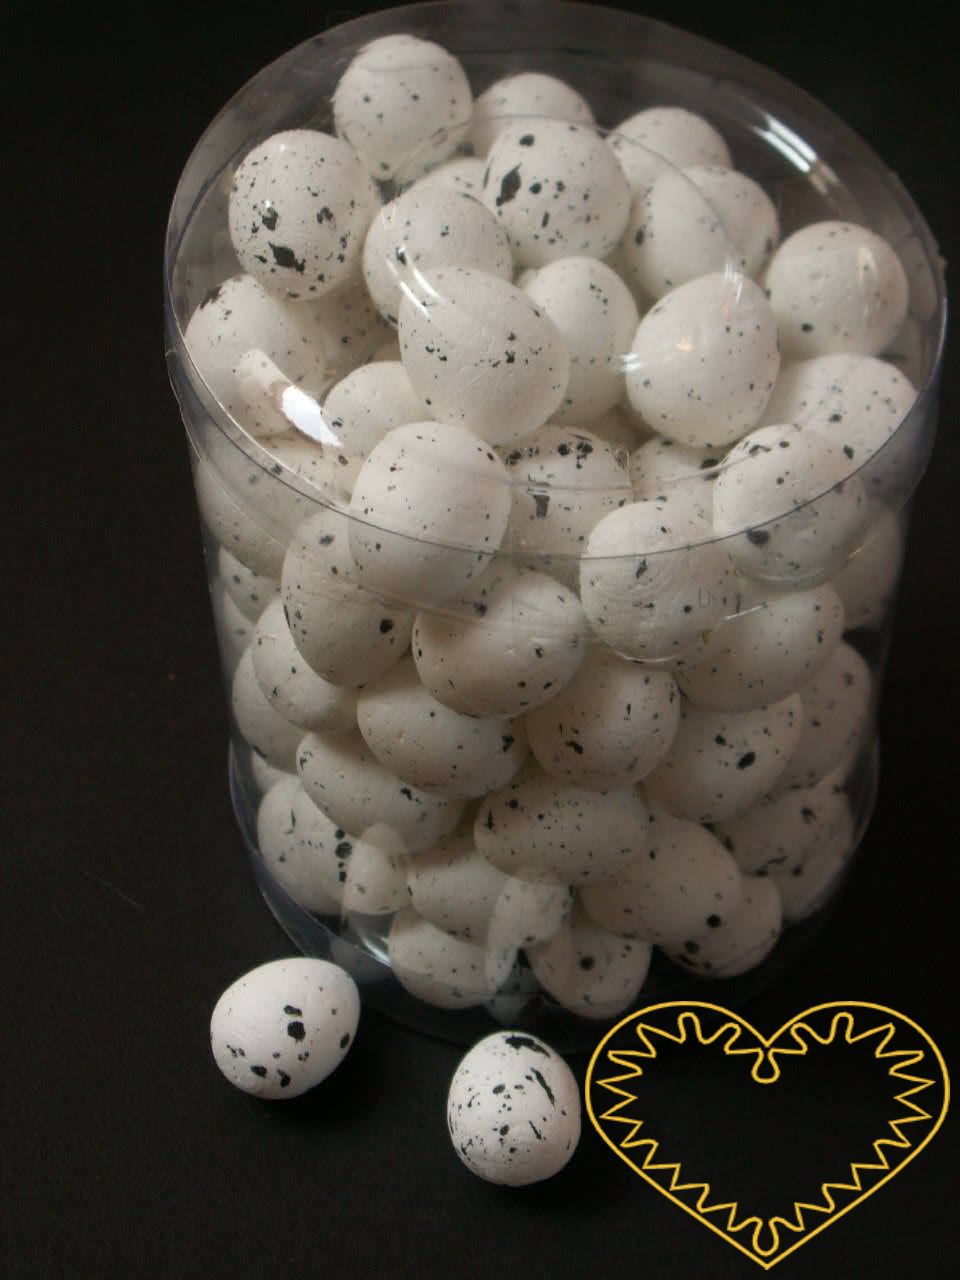 Bílá žíhaná plastová vajíčka 2 cm - sada 95 kusů. Vhodné k nejrůznějšímu tvoření - lepení, barvení, malování, k přípravě dekorací, k aranžování.